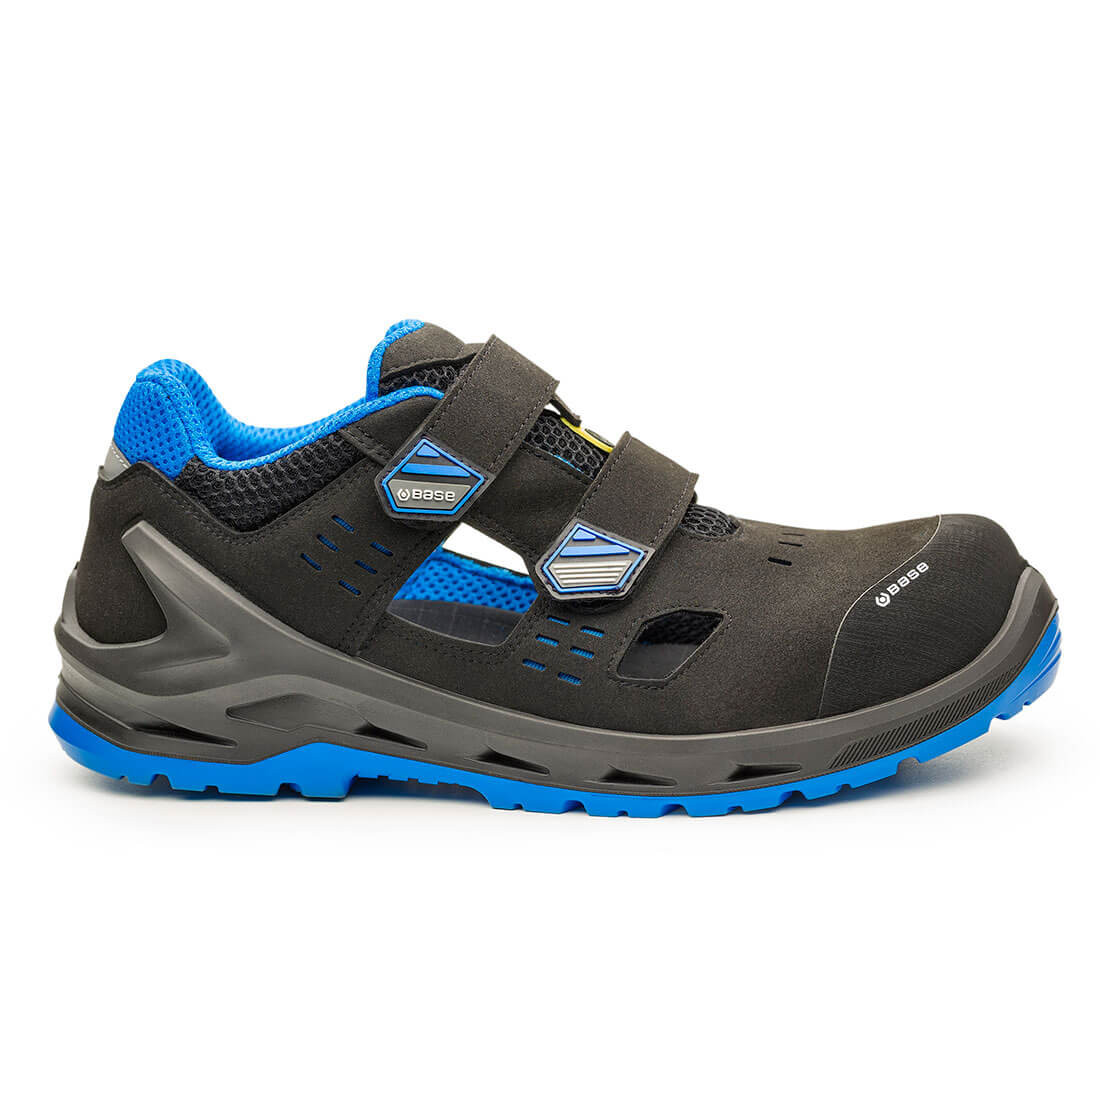 Pantofi i-Bit S1P ESD SRC - Incaltaminte de protectie | Bocanci, Pantofi, Sandale, Cizme